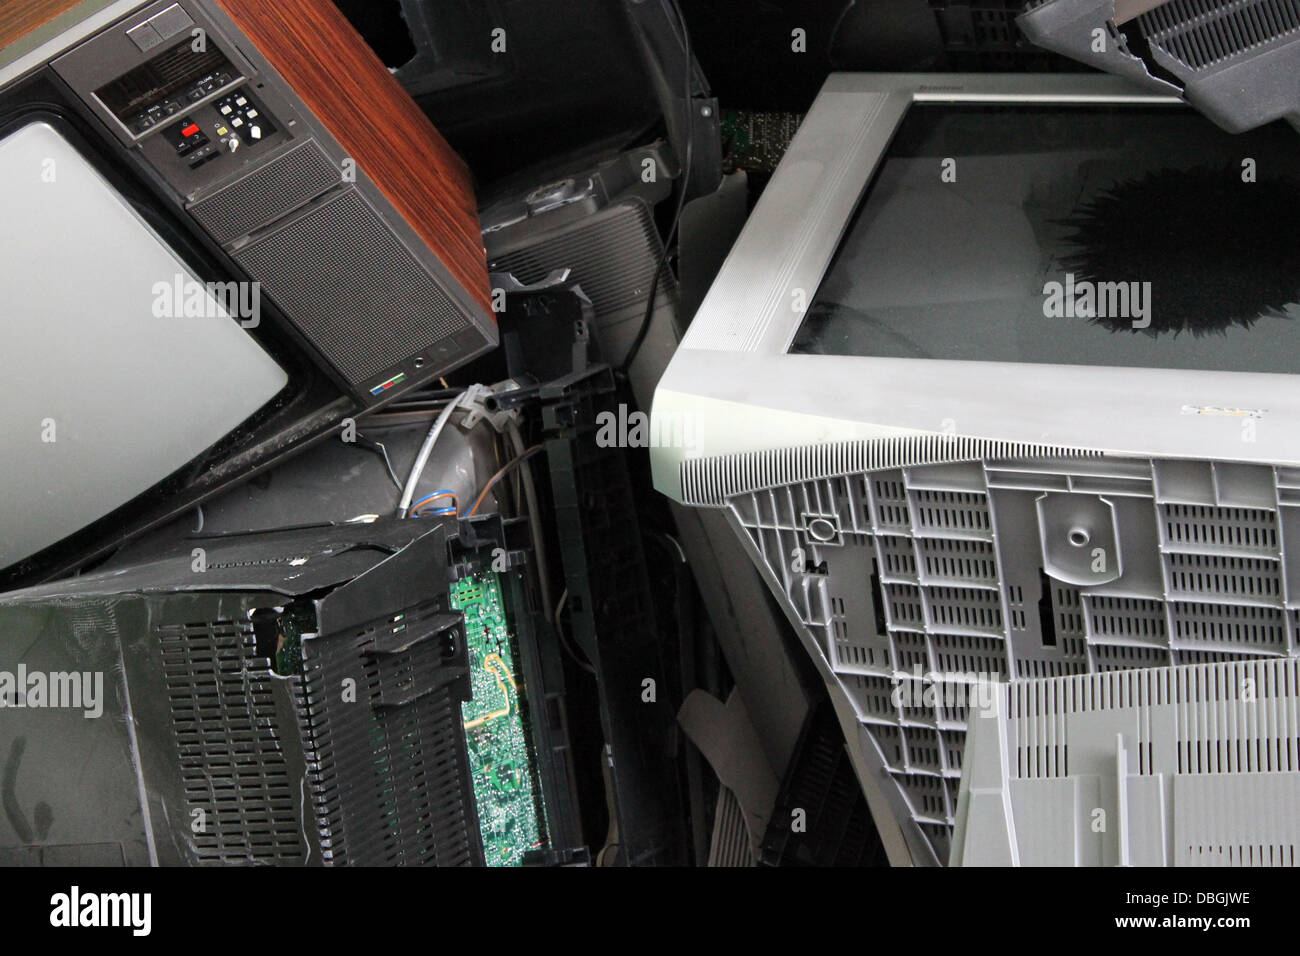 Electronic waste Stock Photo